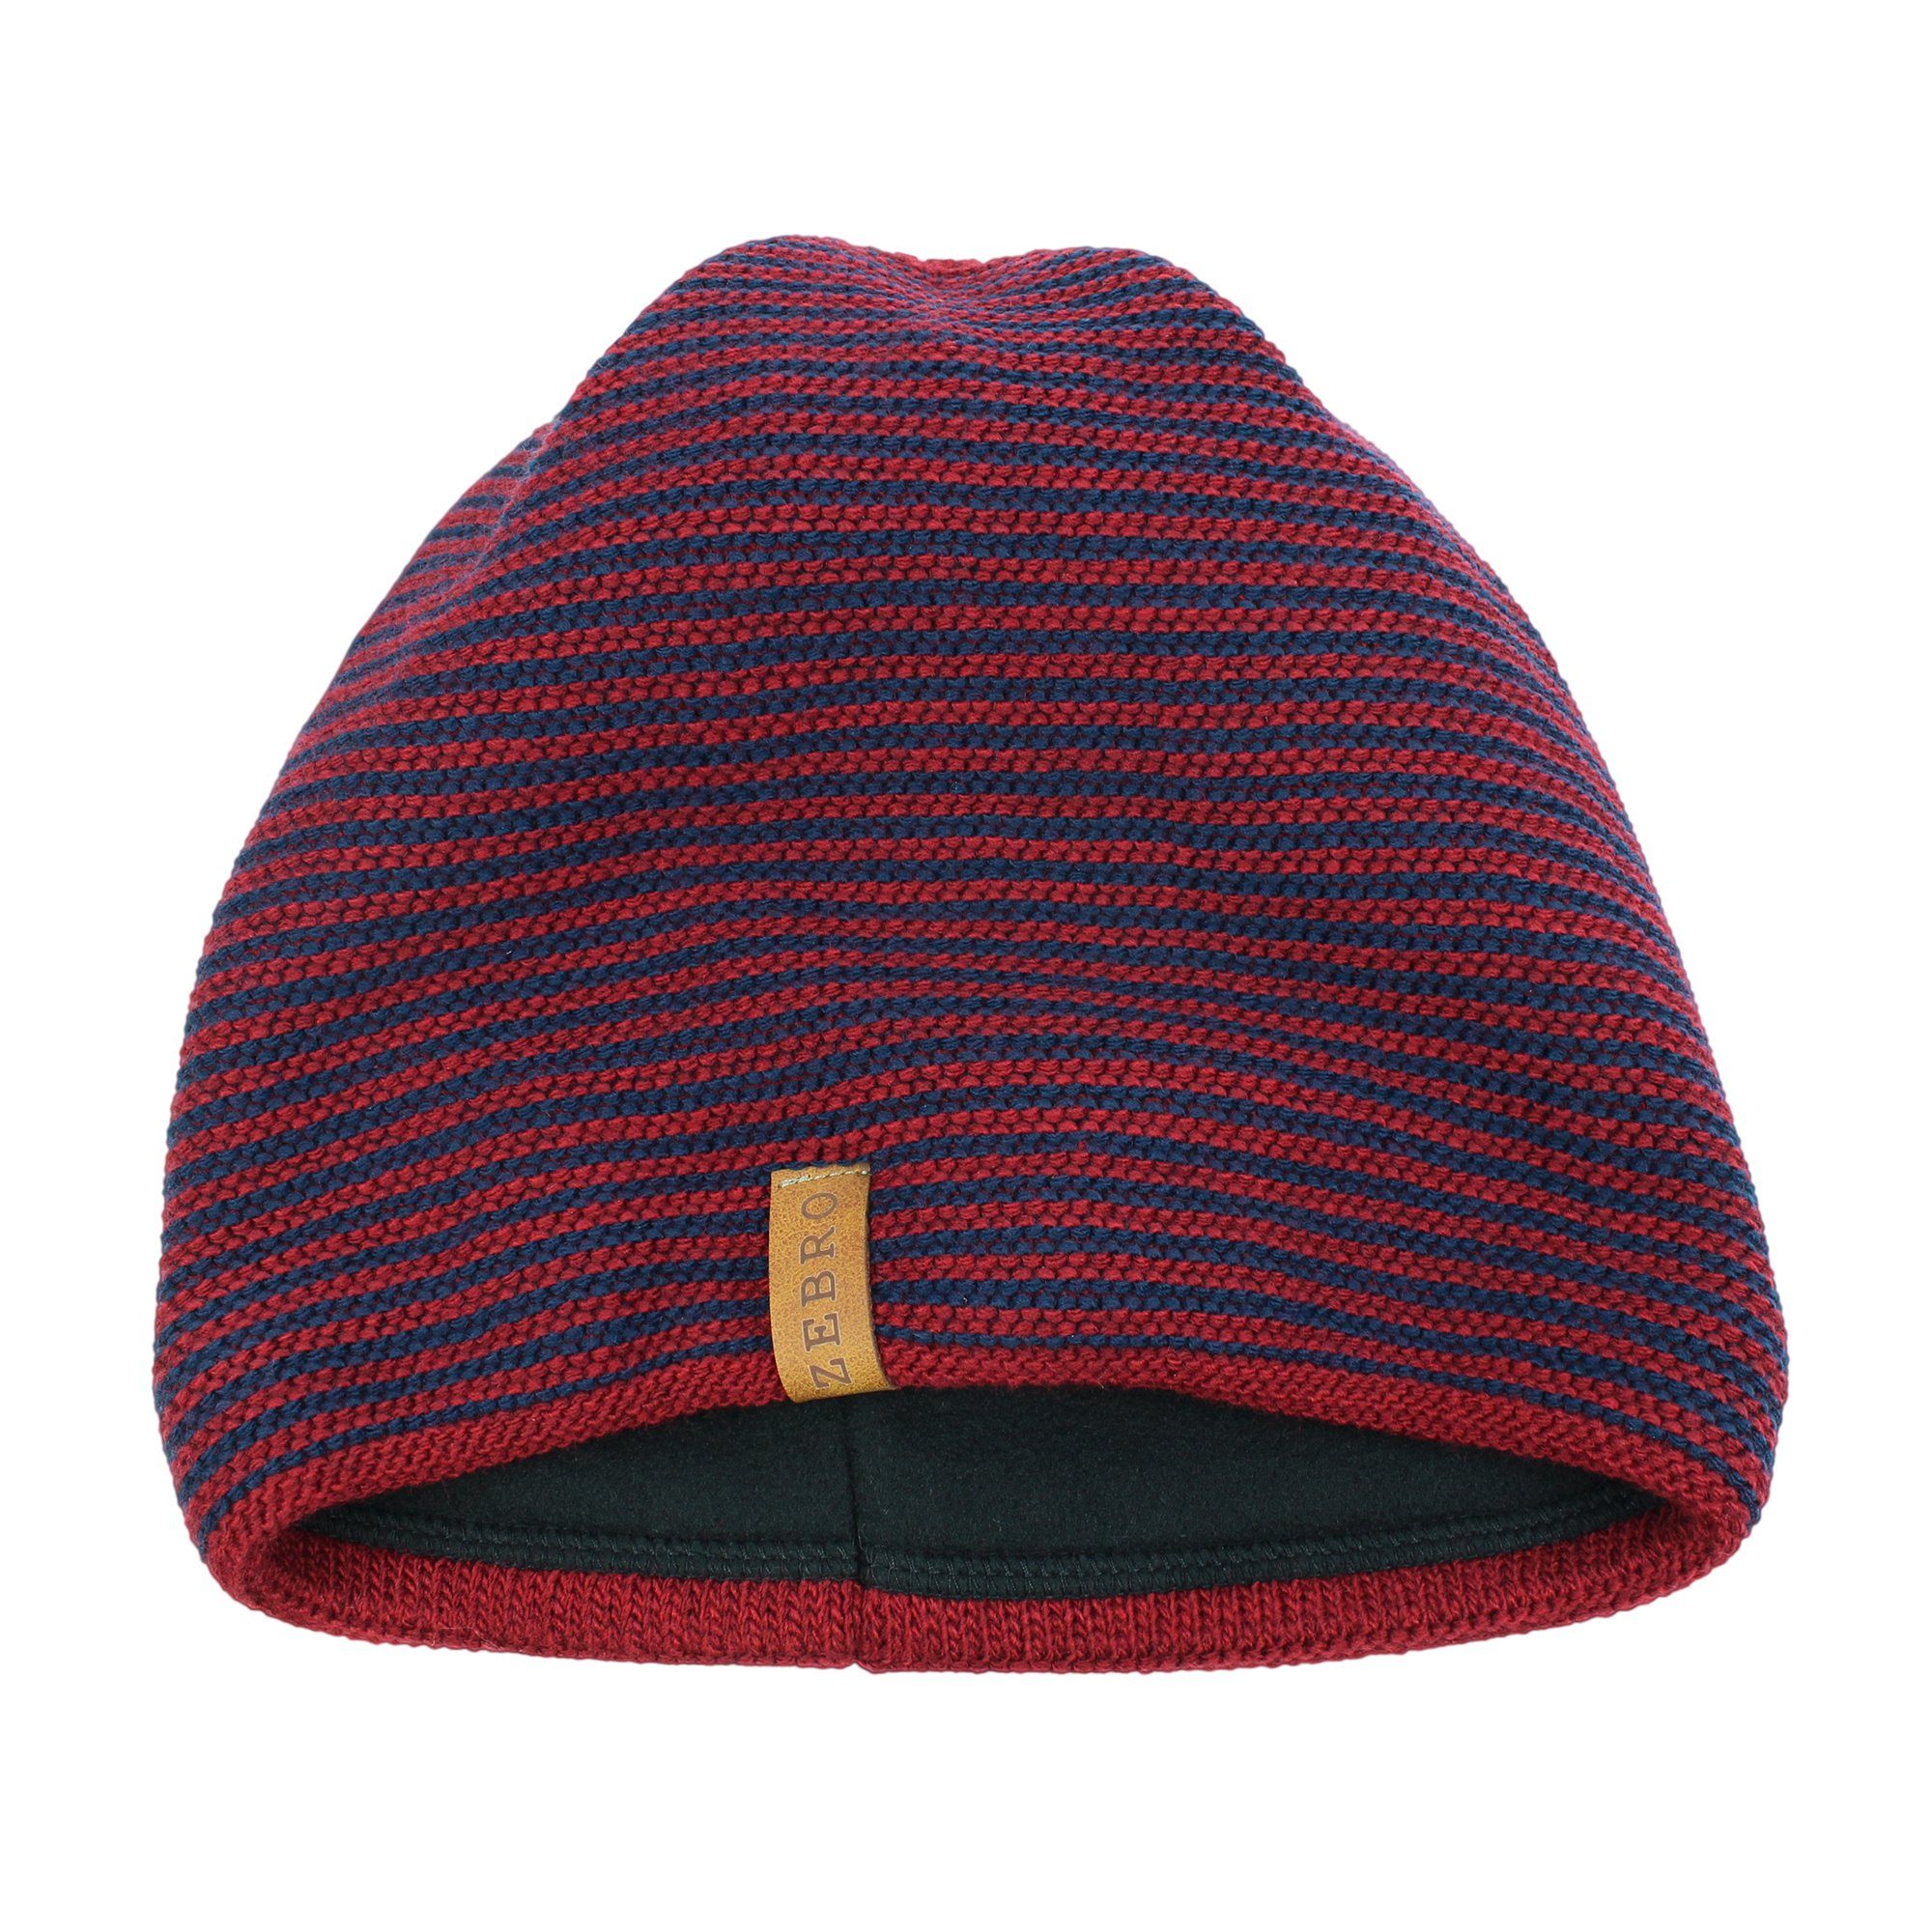 ZEBRO Strickmütze Mütze "Free" mit Kaschmir-Wolle rot